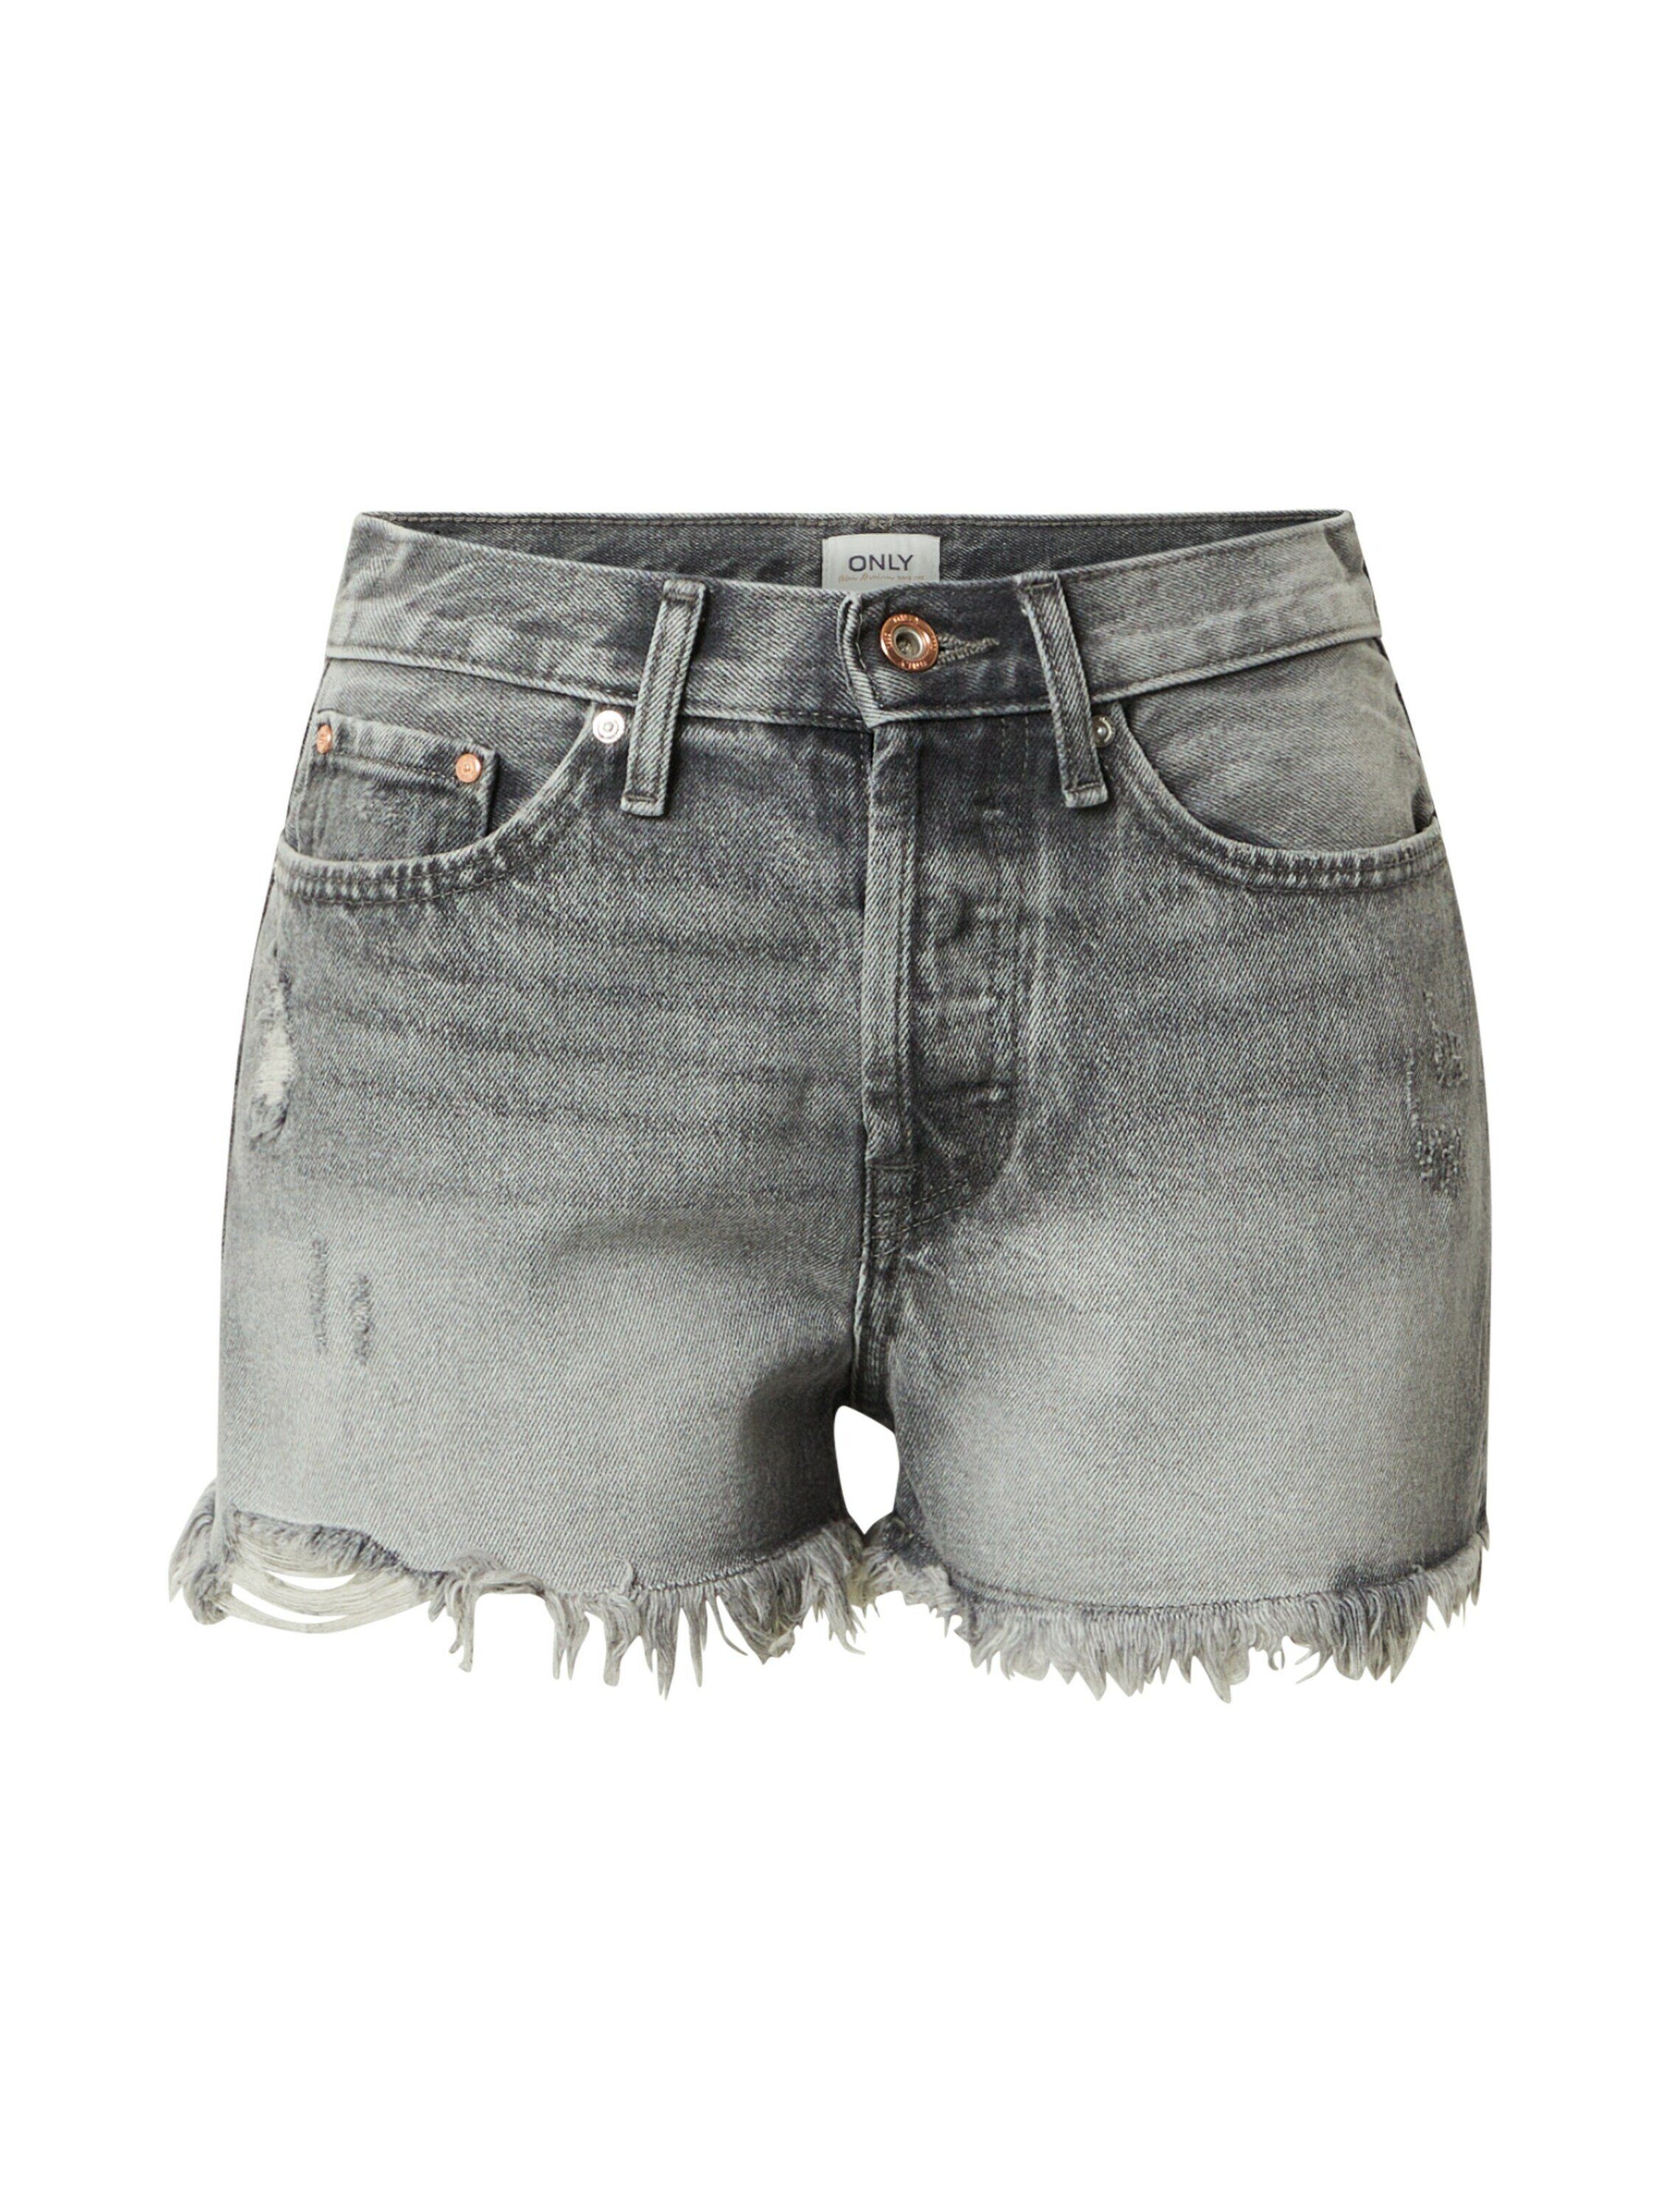 Graue Jeans Shorts für Damen online kaufen | OTTO